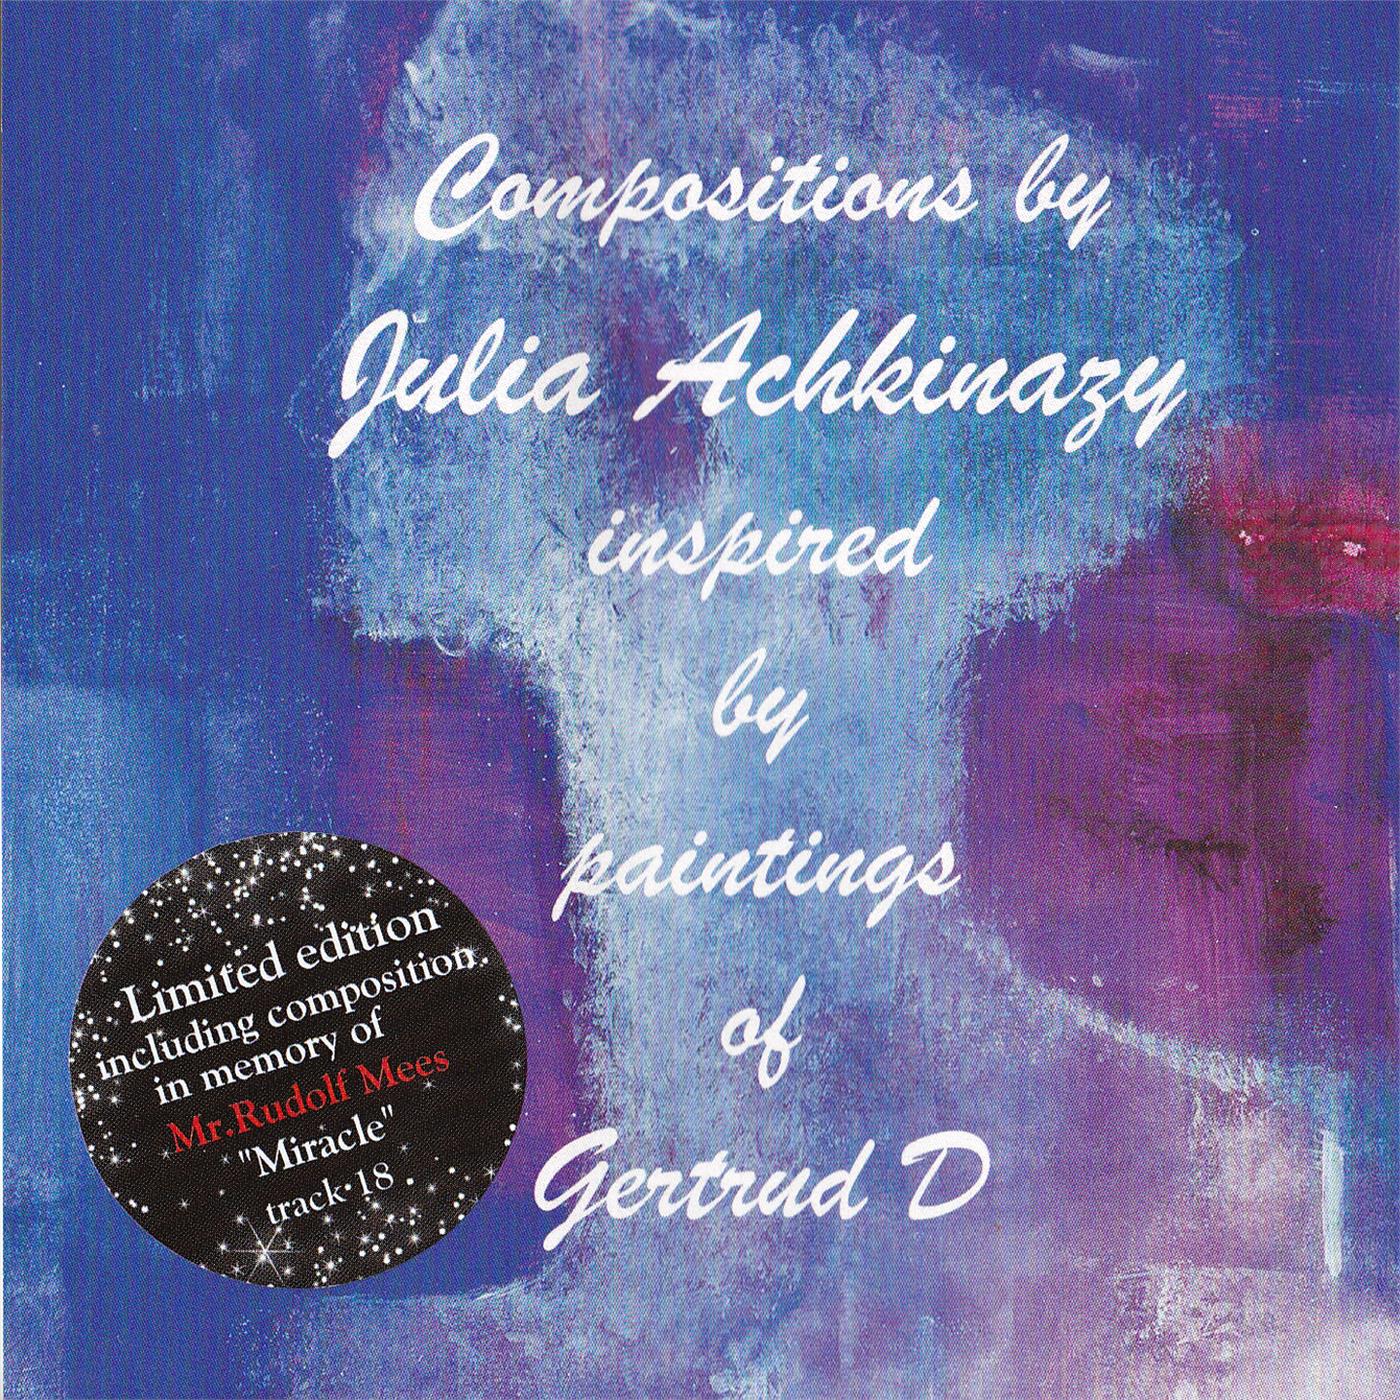 Compositions Julia Achkinazy paintings Gertrud D